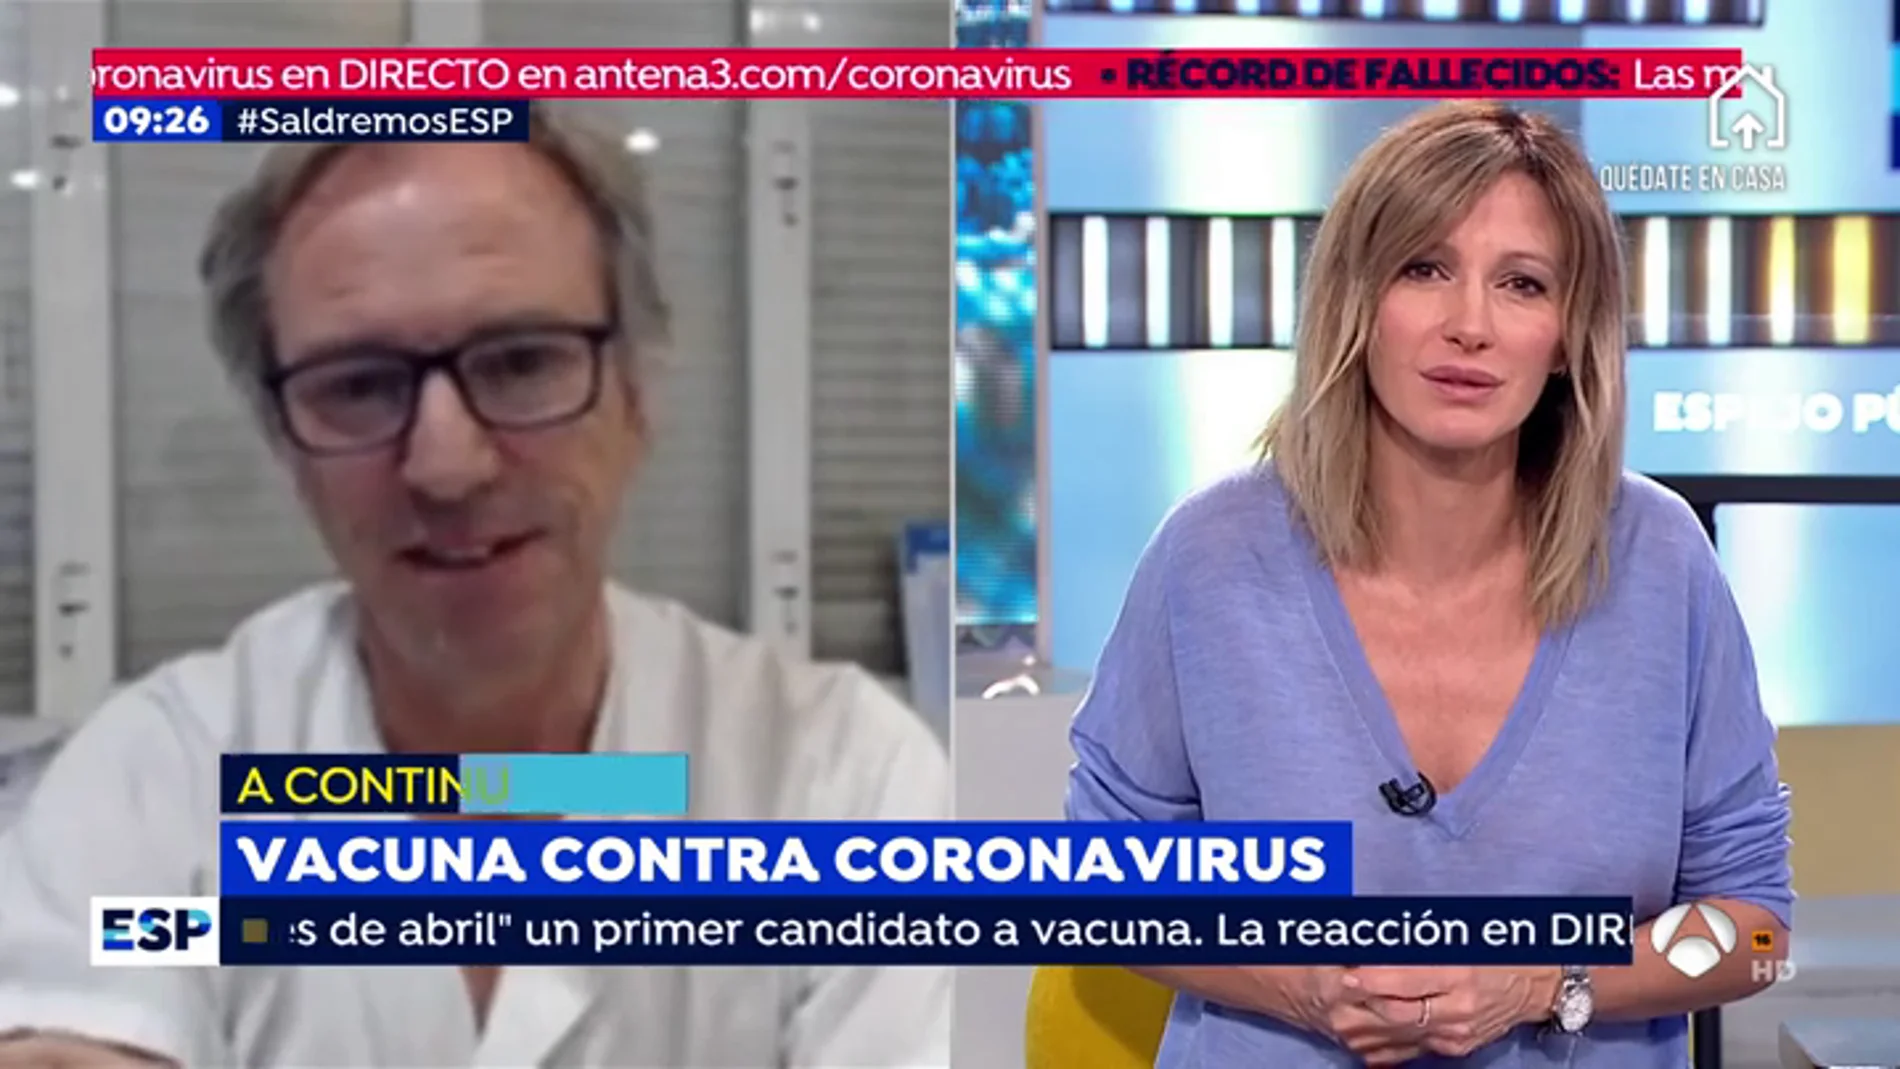 Crisis coronavirus